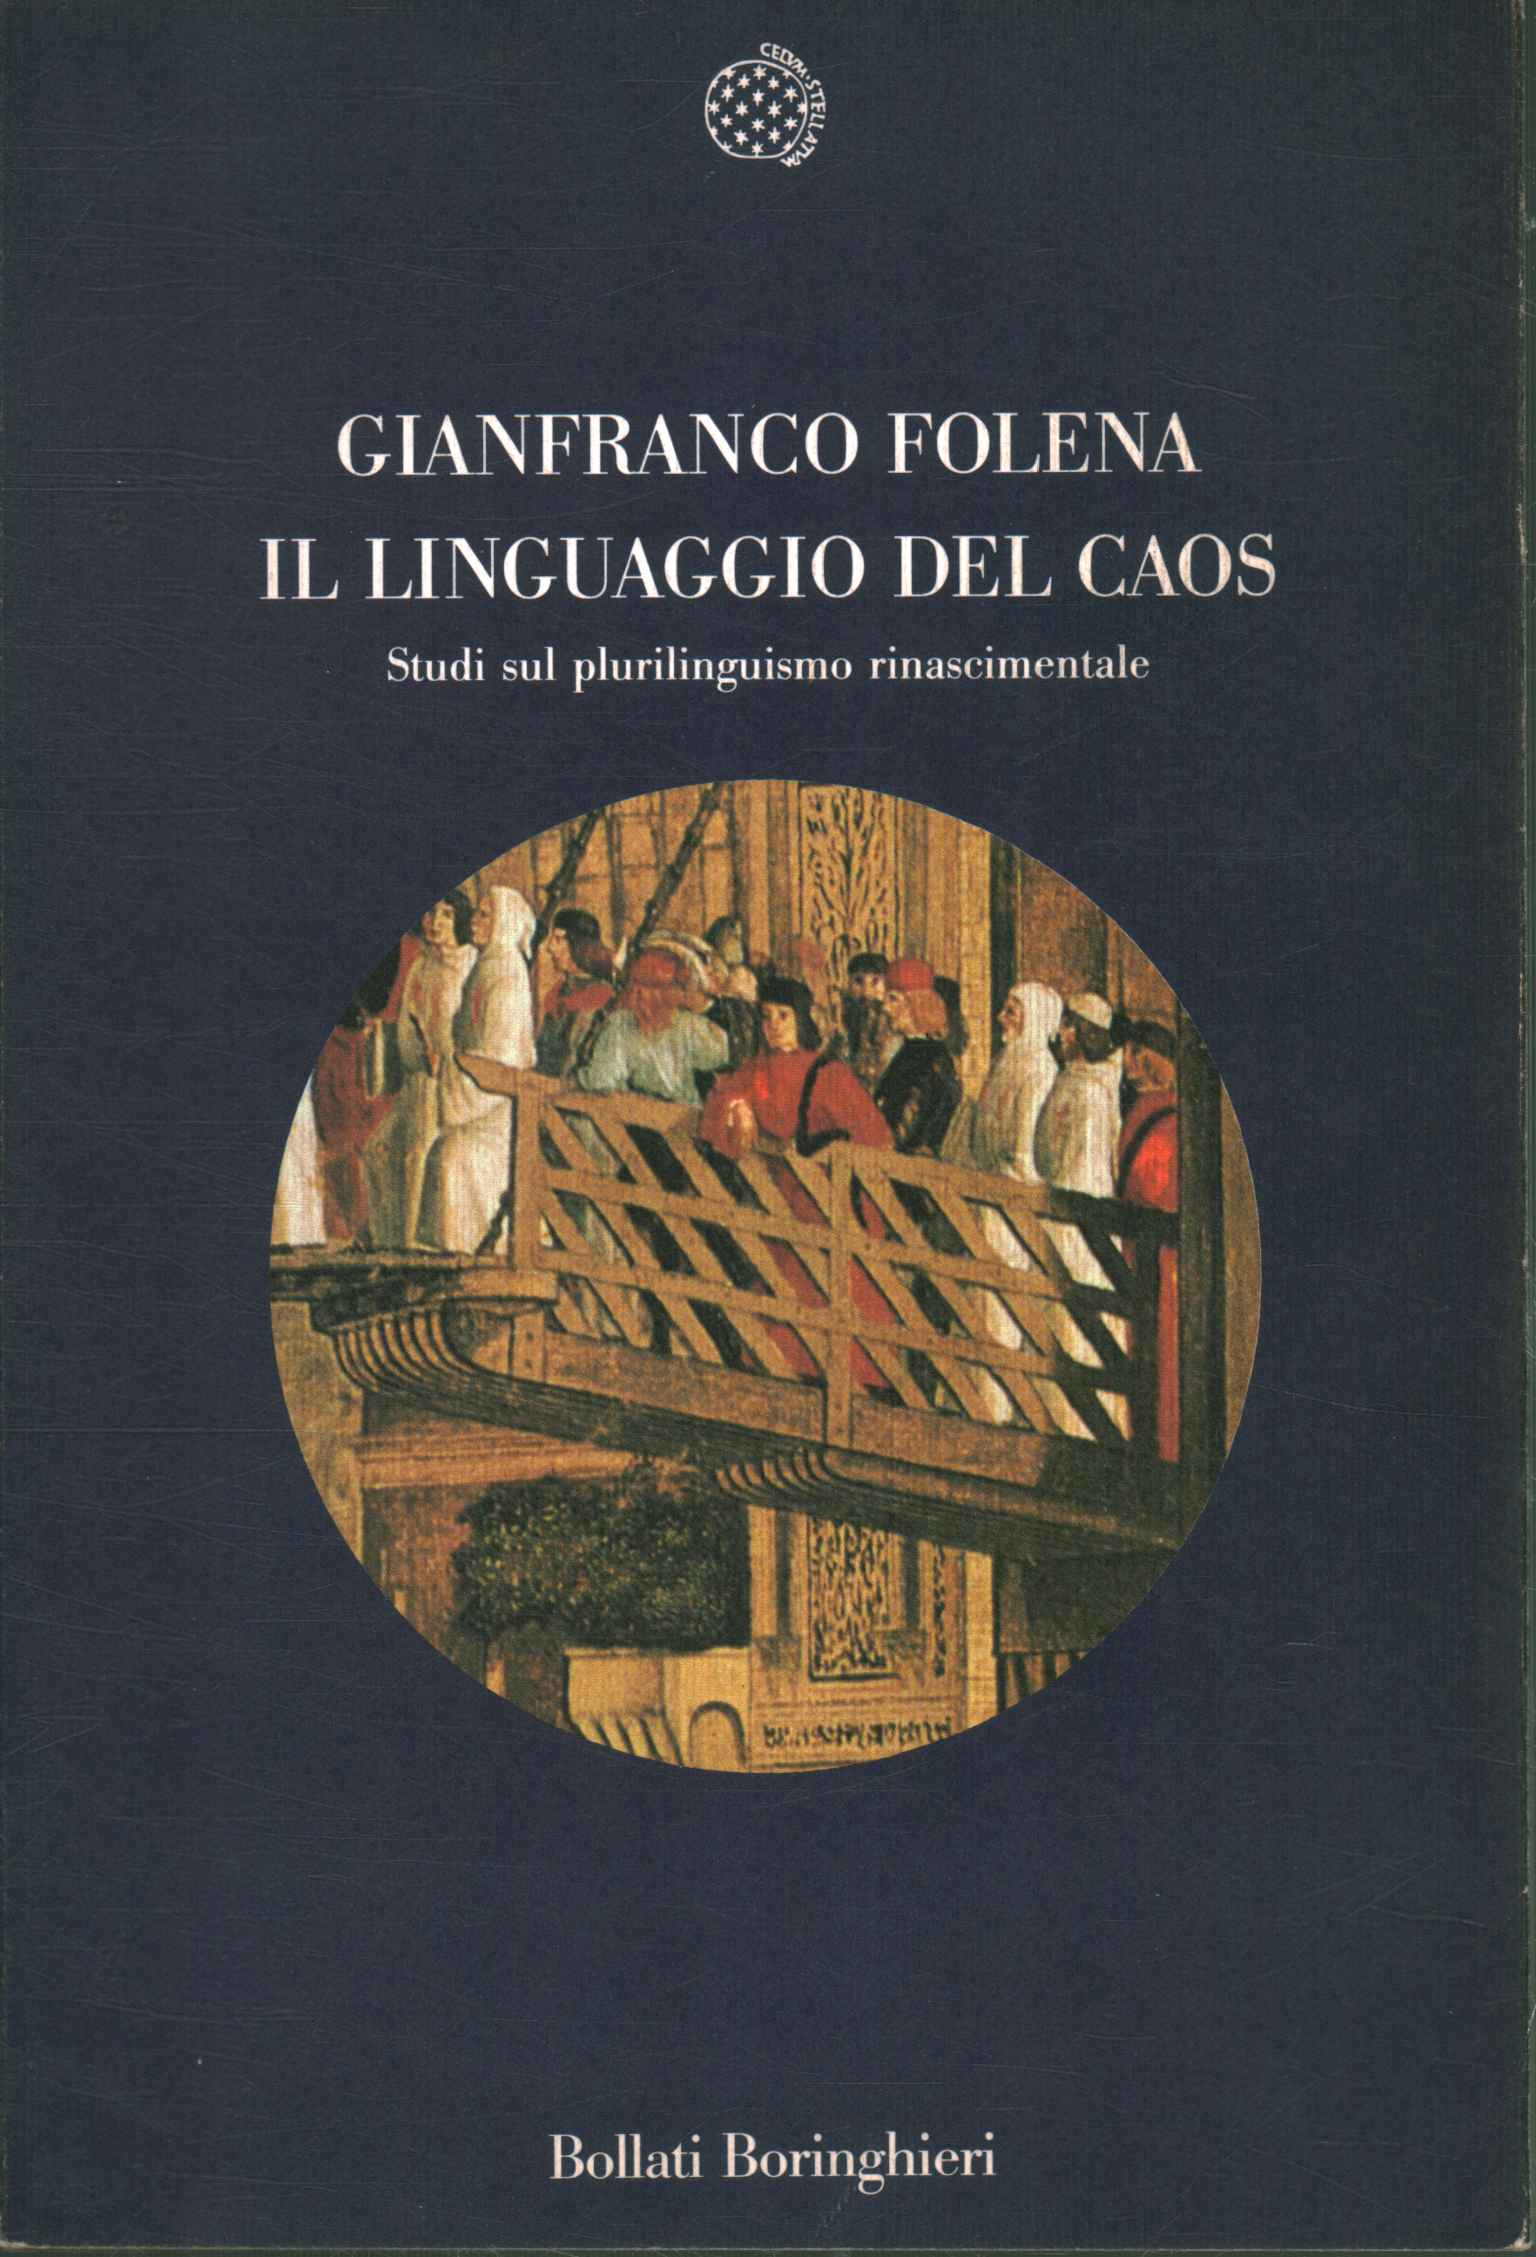 Il linguaggio del Caos  - Gianfranco Folena (Bollati Boringhieri) [1991]